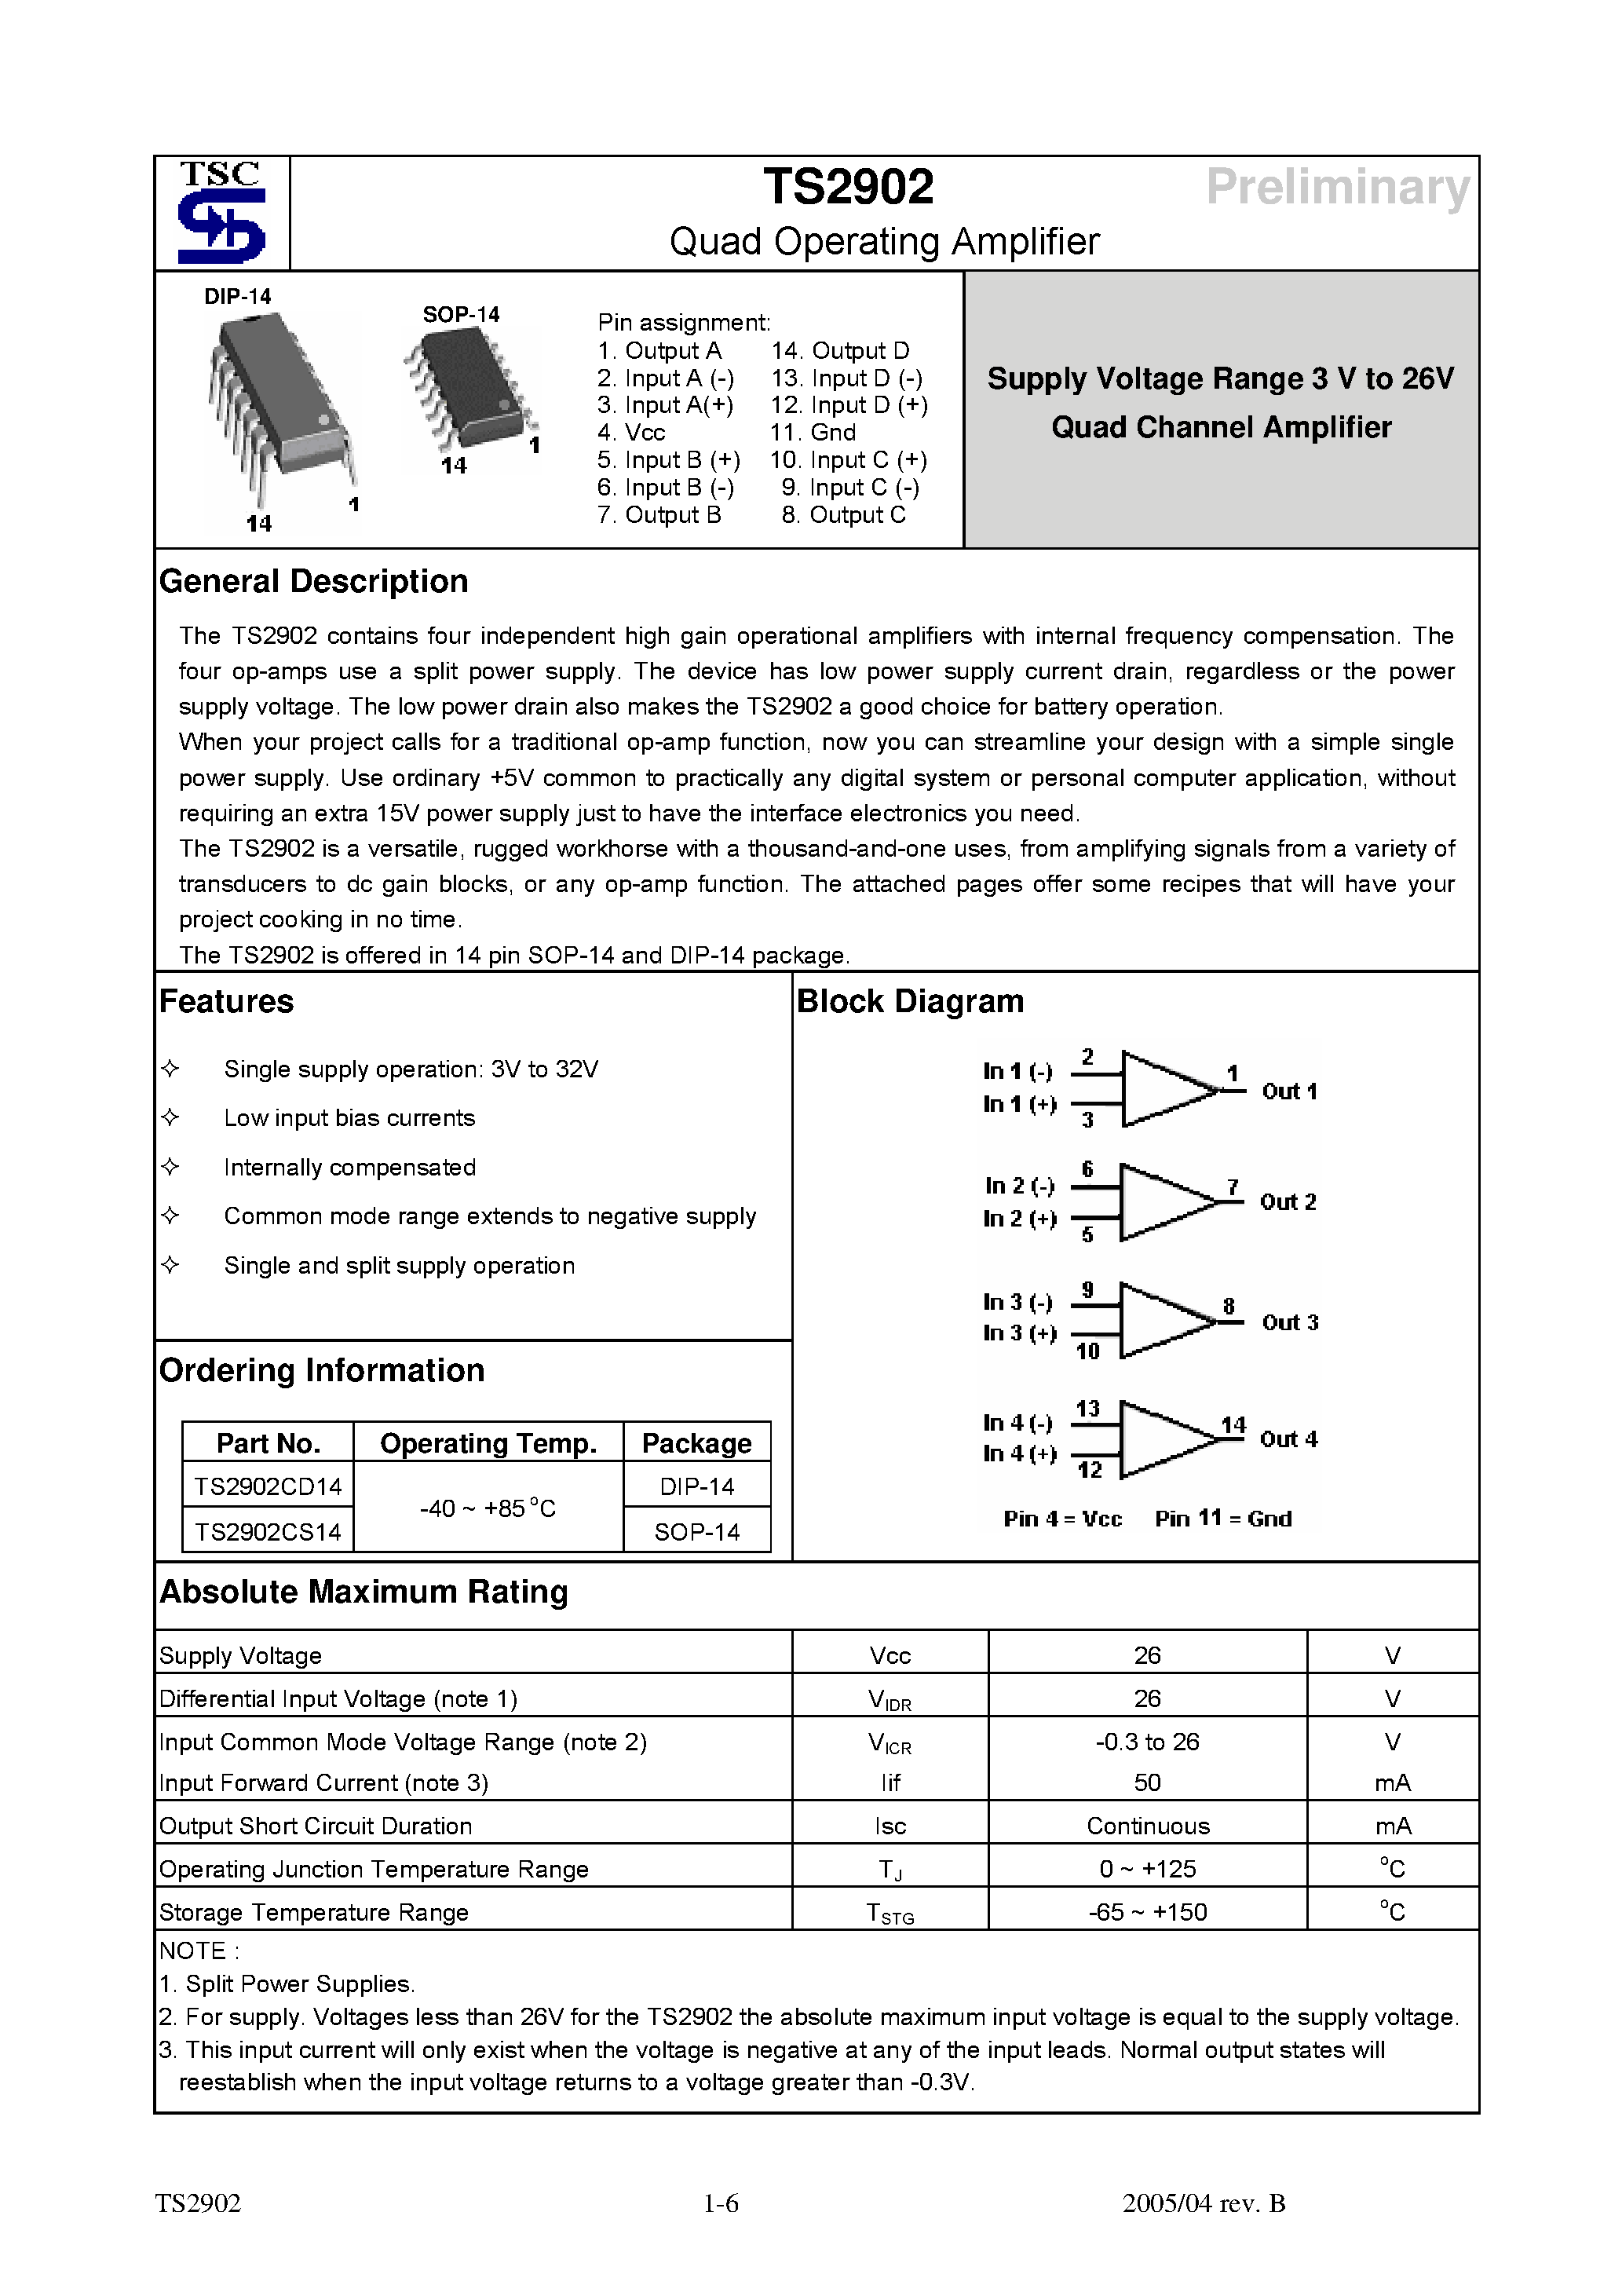 Даташит TS2902 - Quad Operating Amplifier страница 1